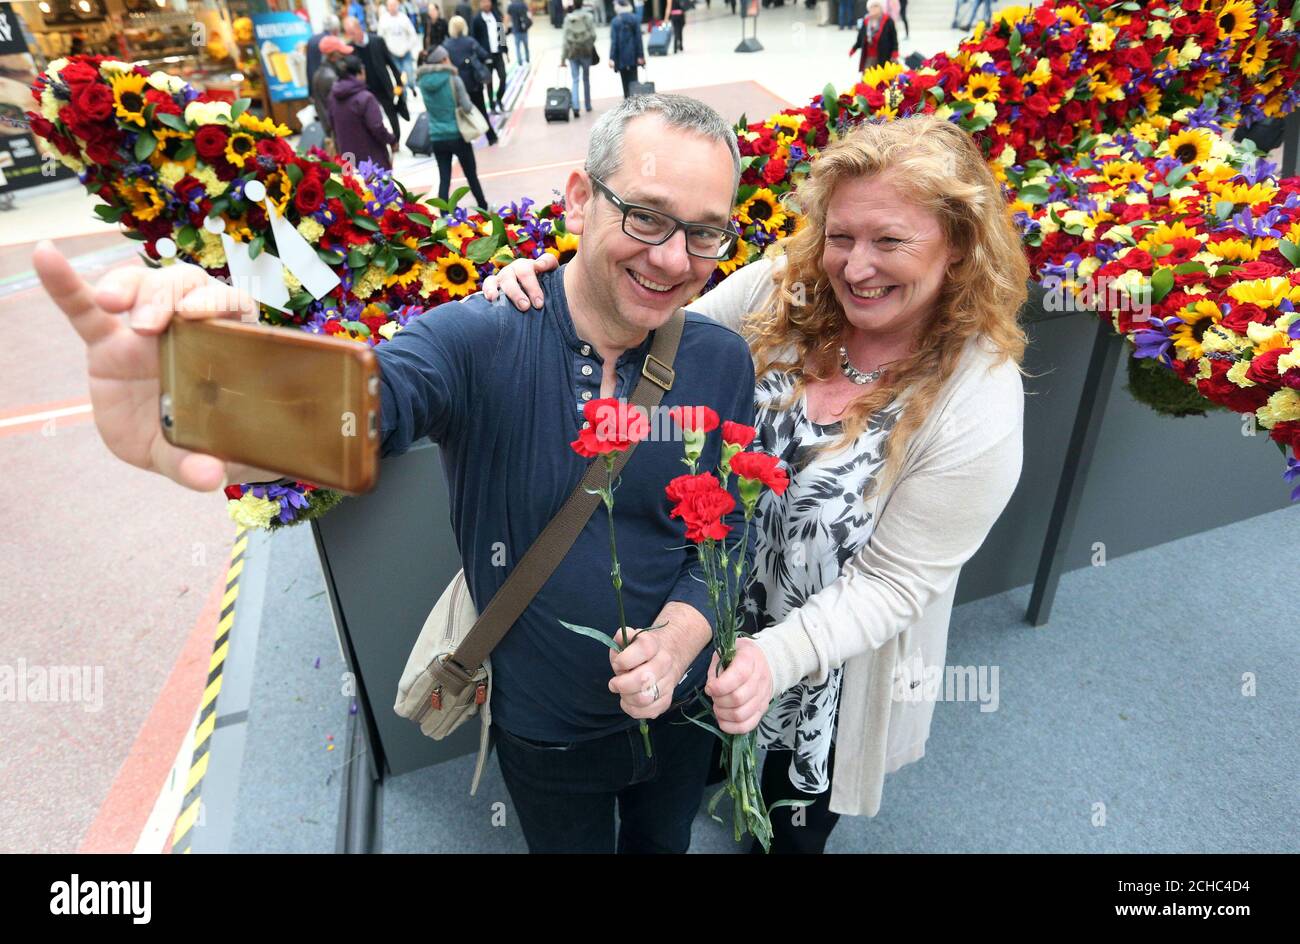 Der Fernsehgärtner Charlie Dimmock lässt sich mit einem Pendler ein Selfie machen, während er am Londoner Bahnhof Victoria ein Blumenflugzeug enthüllte, das aus 10,000 Blumen besteht, die von der Billigfluggesellschaft und dem neuen Monarch-Reiseziel stammen. Stockfoto